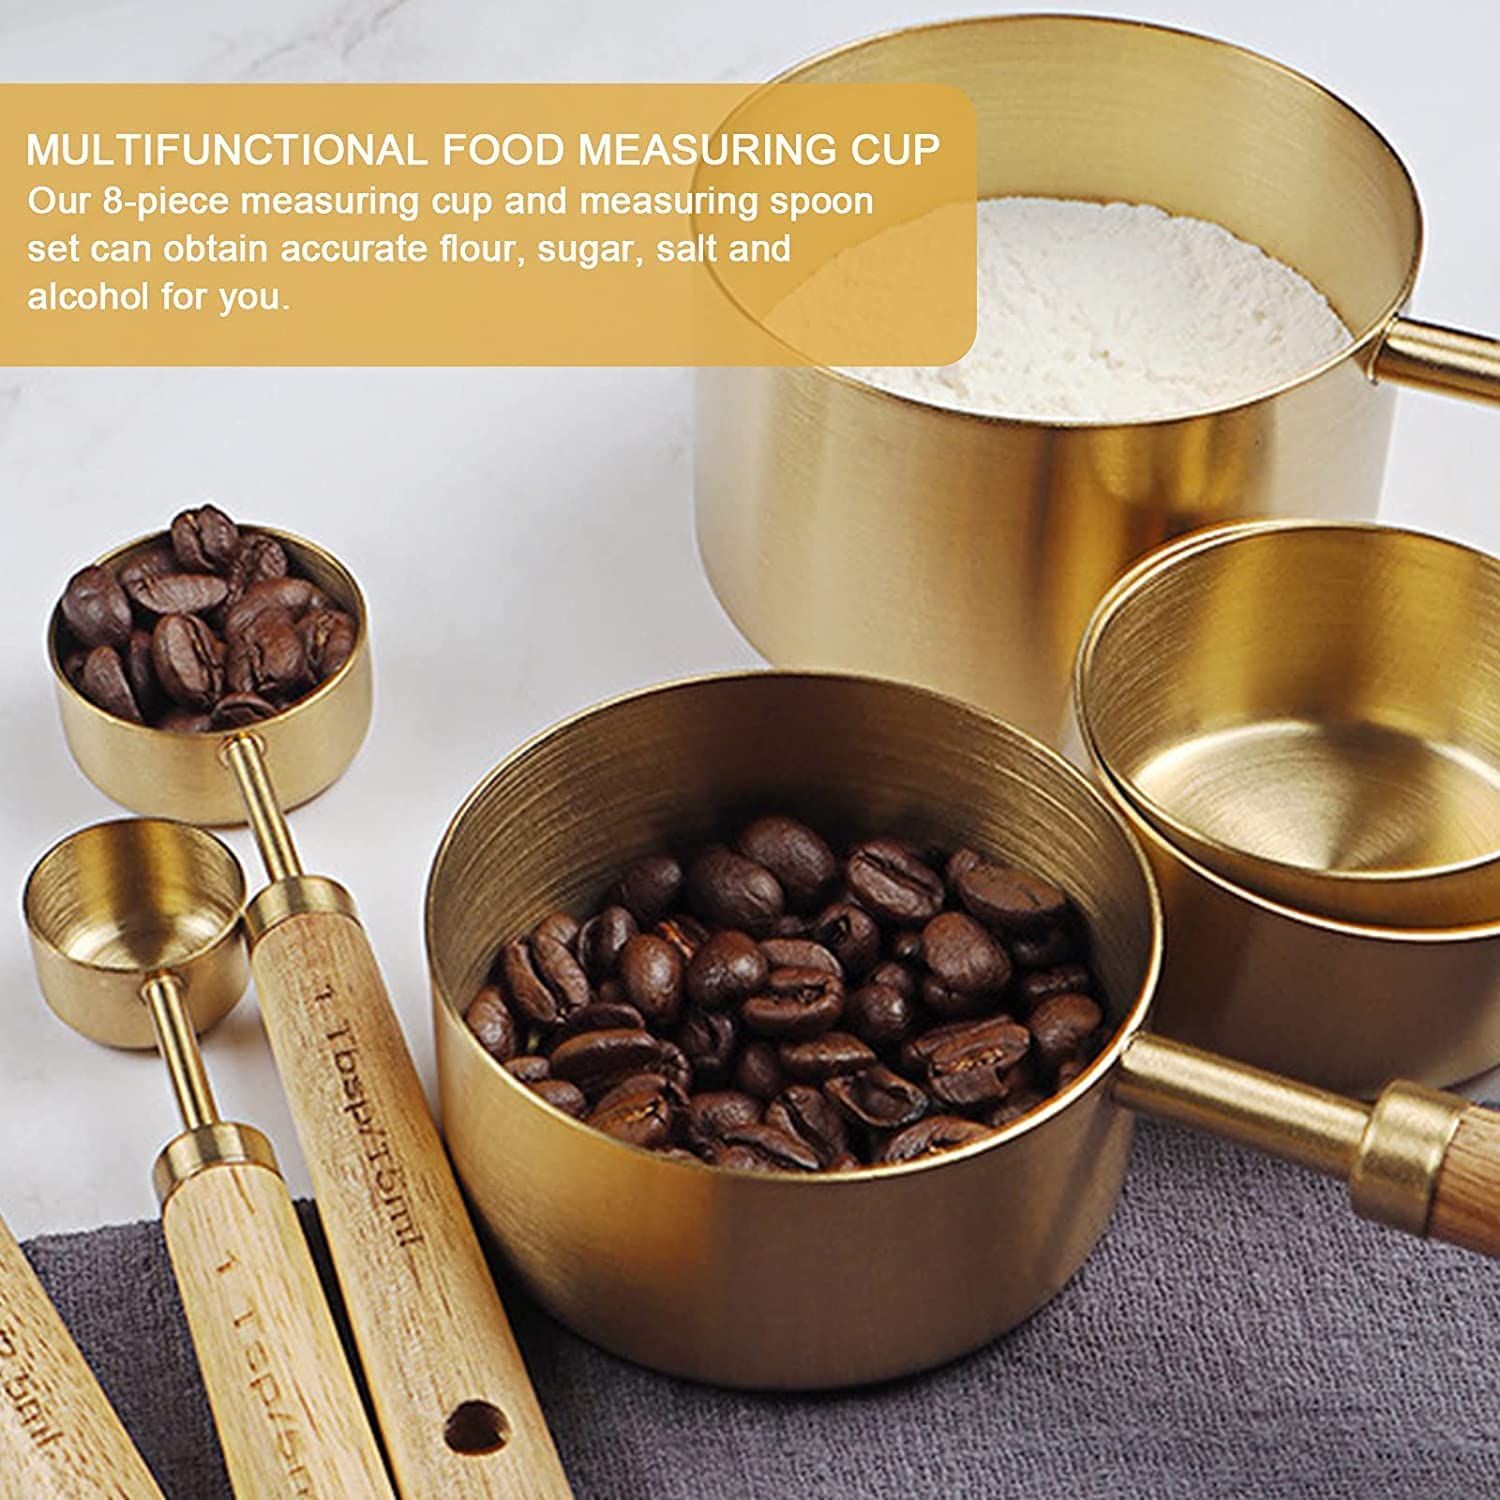 Good Cook - Stainless Steel 1/8 Cup Coffee Measure Scoop